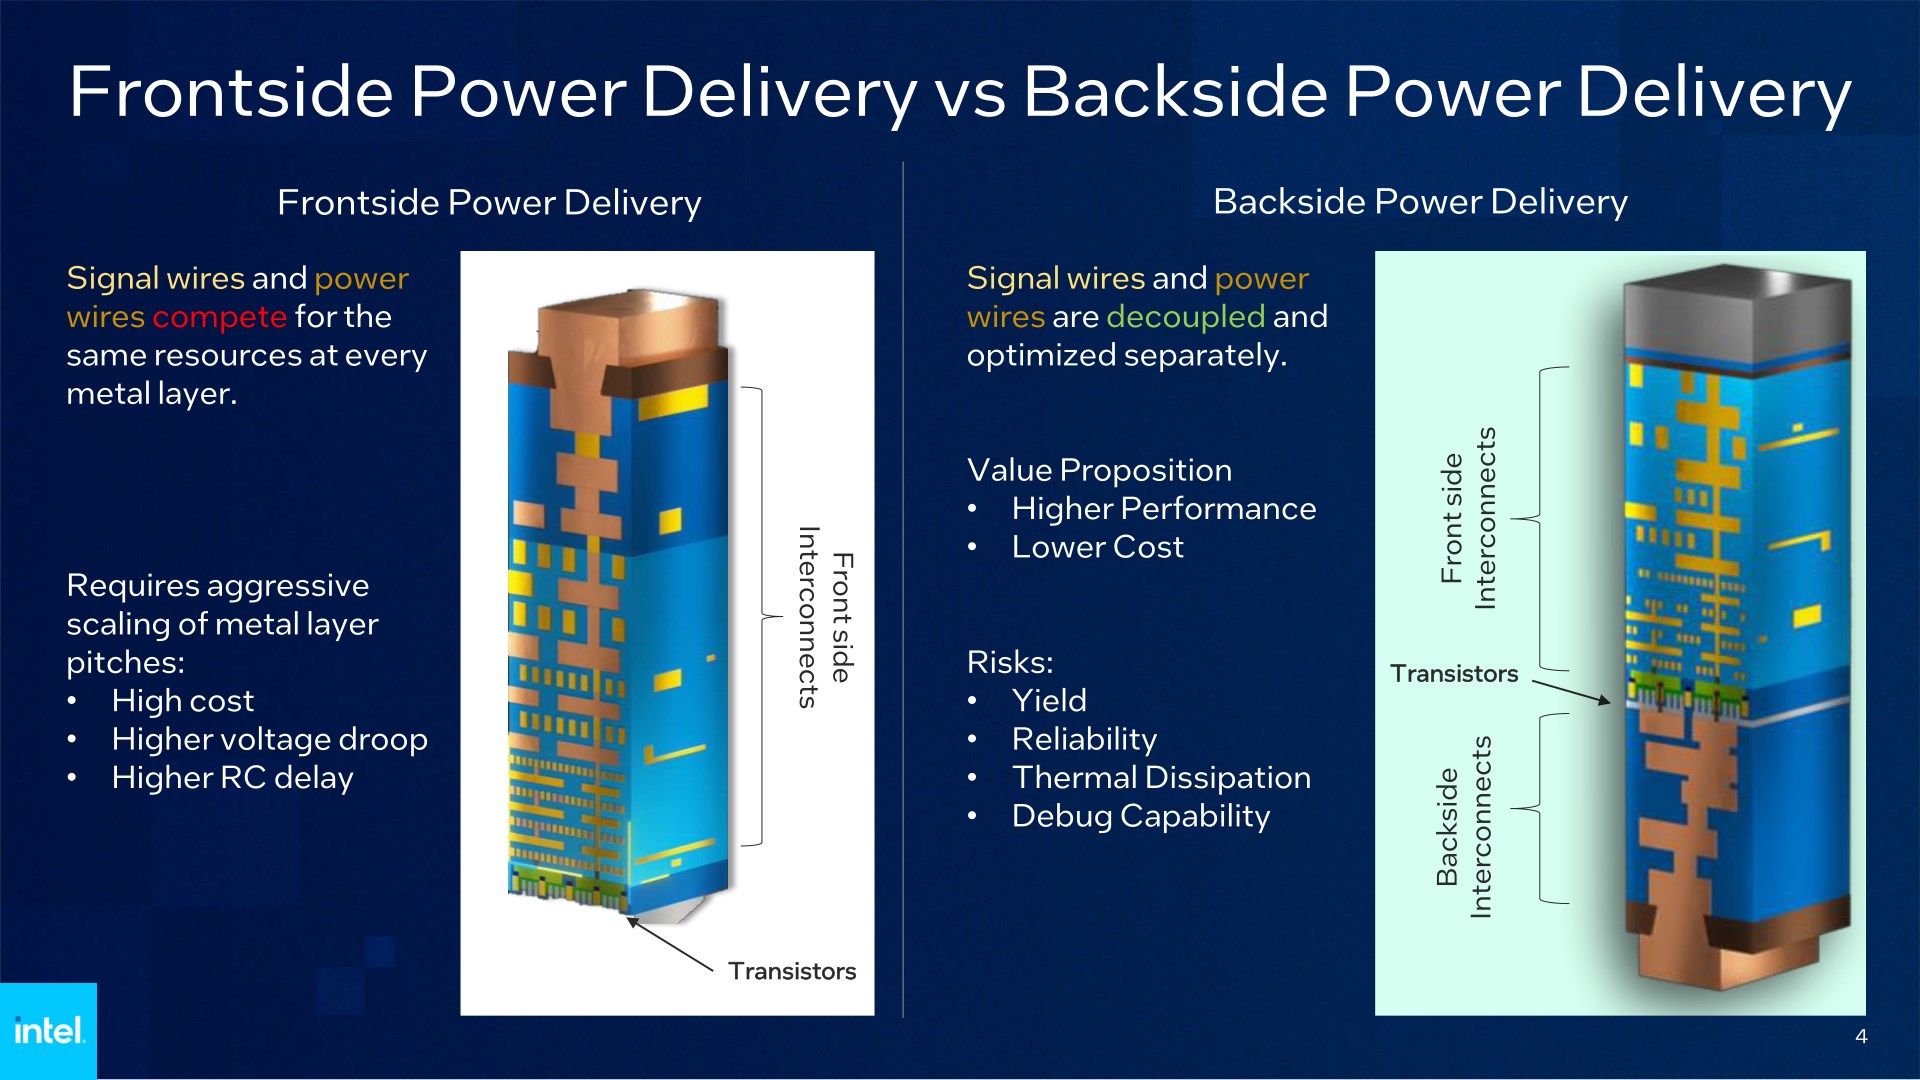 Intel, işlemcilerde çığır açacak teknolojisini duyurdu: PowerVia